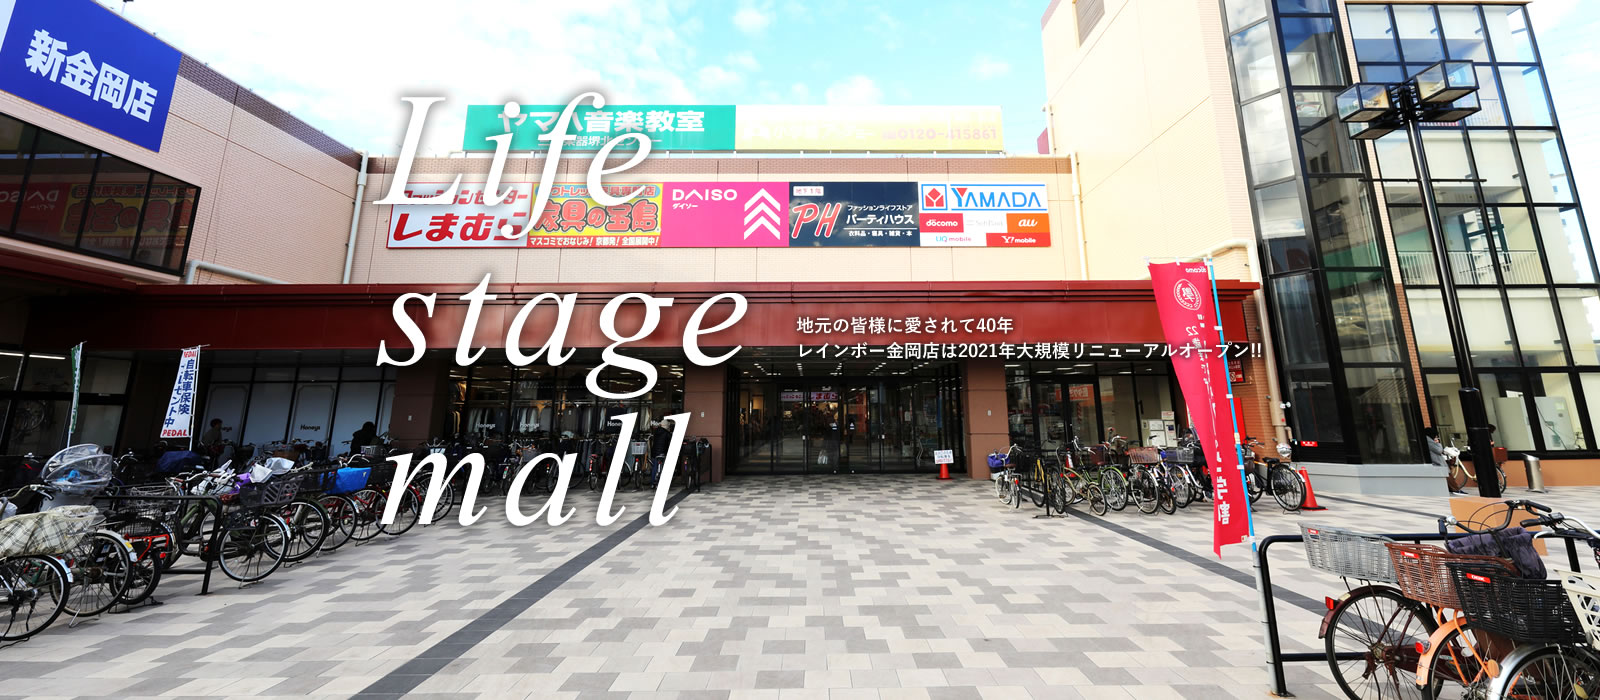 Life stage mall 地元の皆様に愛されて40年 レインボー金岡店は2021年大規模リニューアルオープン！！